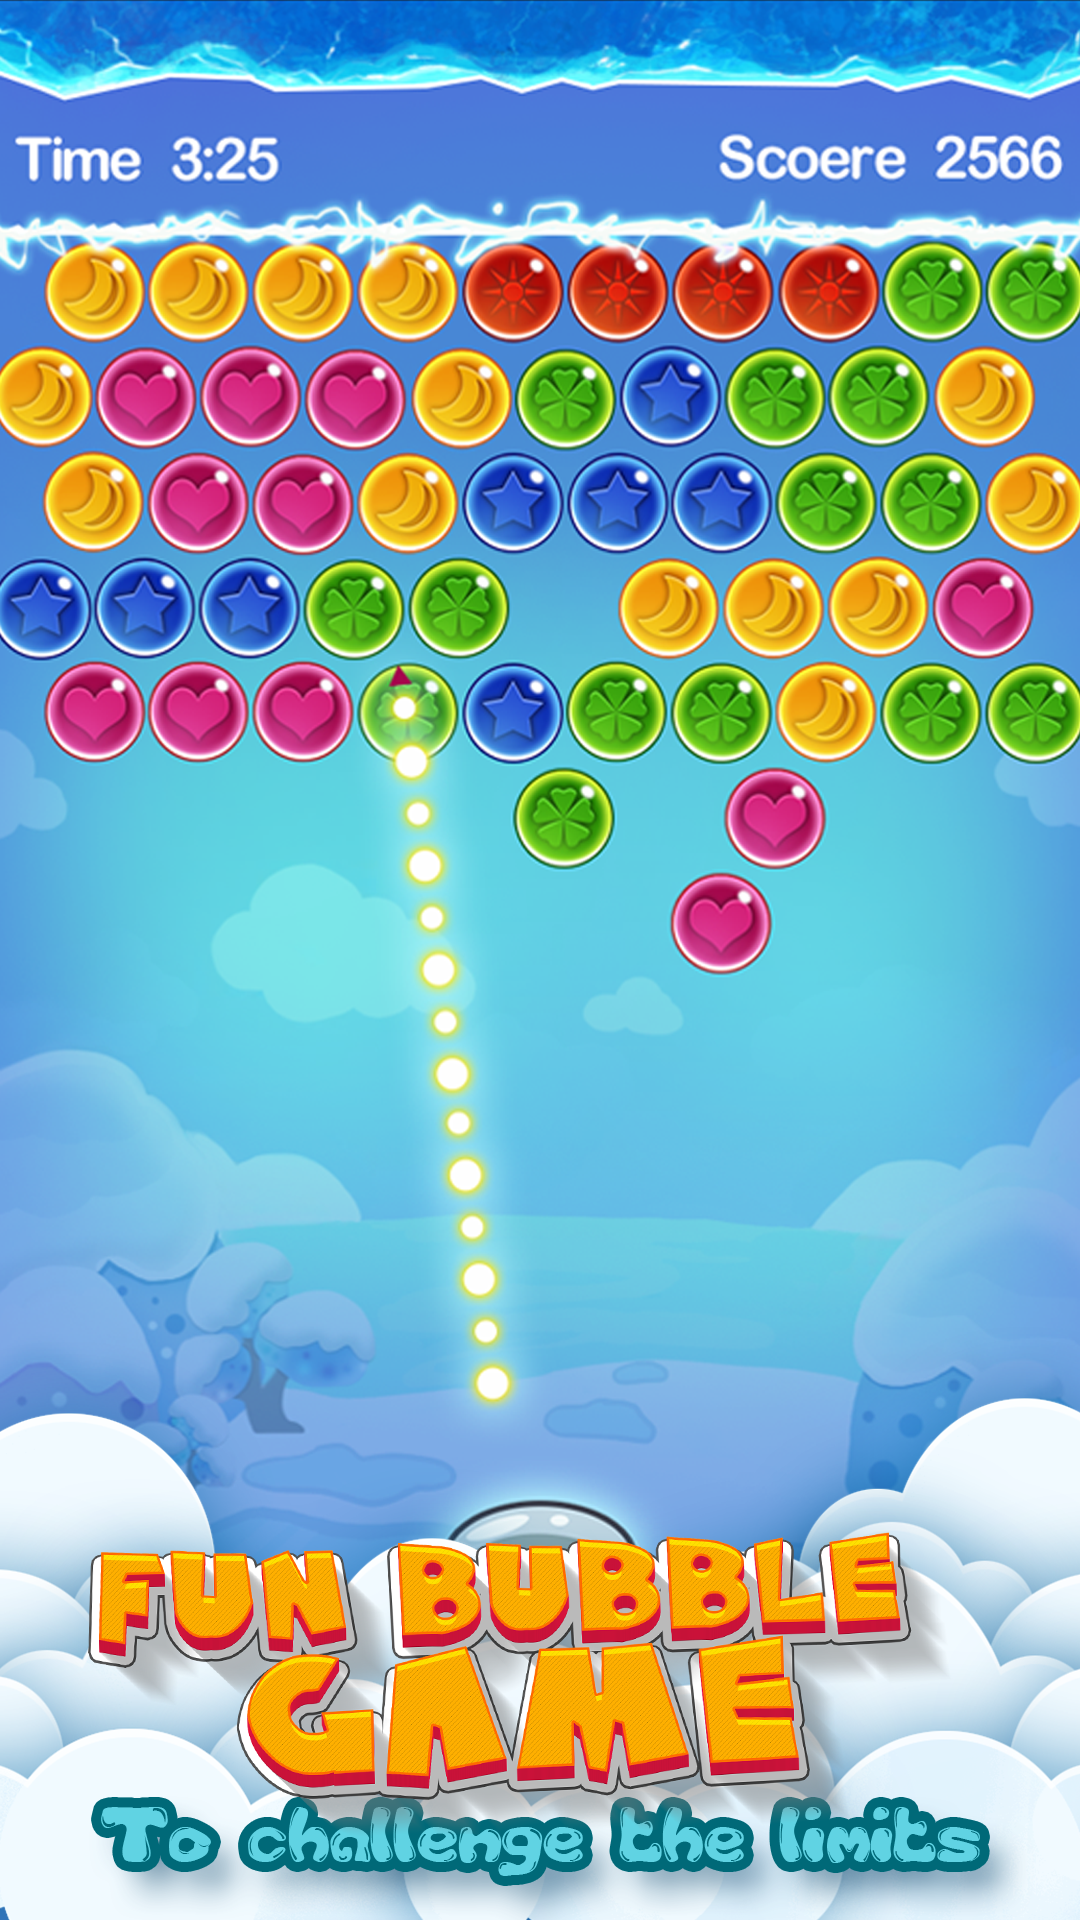 Screenshot 1 of Bubble Shooter - Kostenloses, beliebtes Gelegenheits-Puzzlespiel 4.0